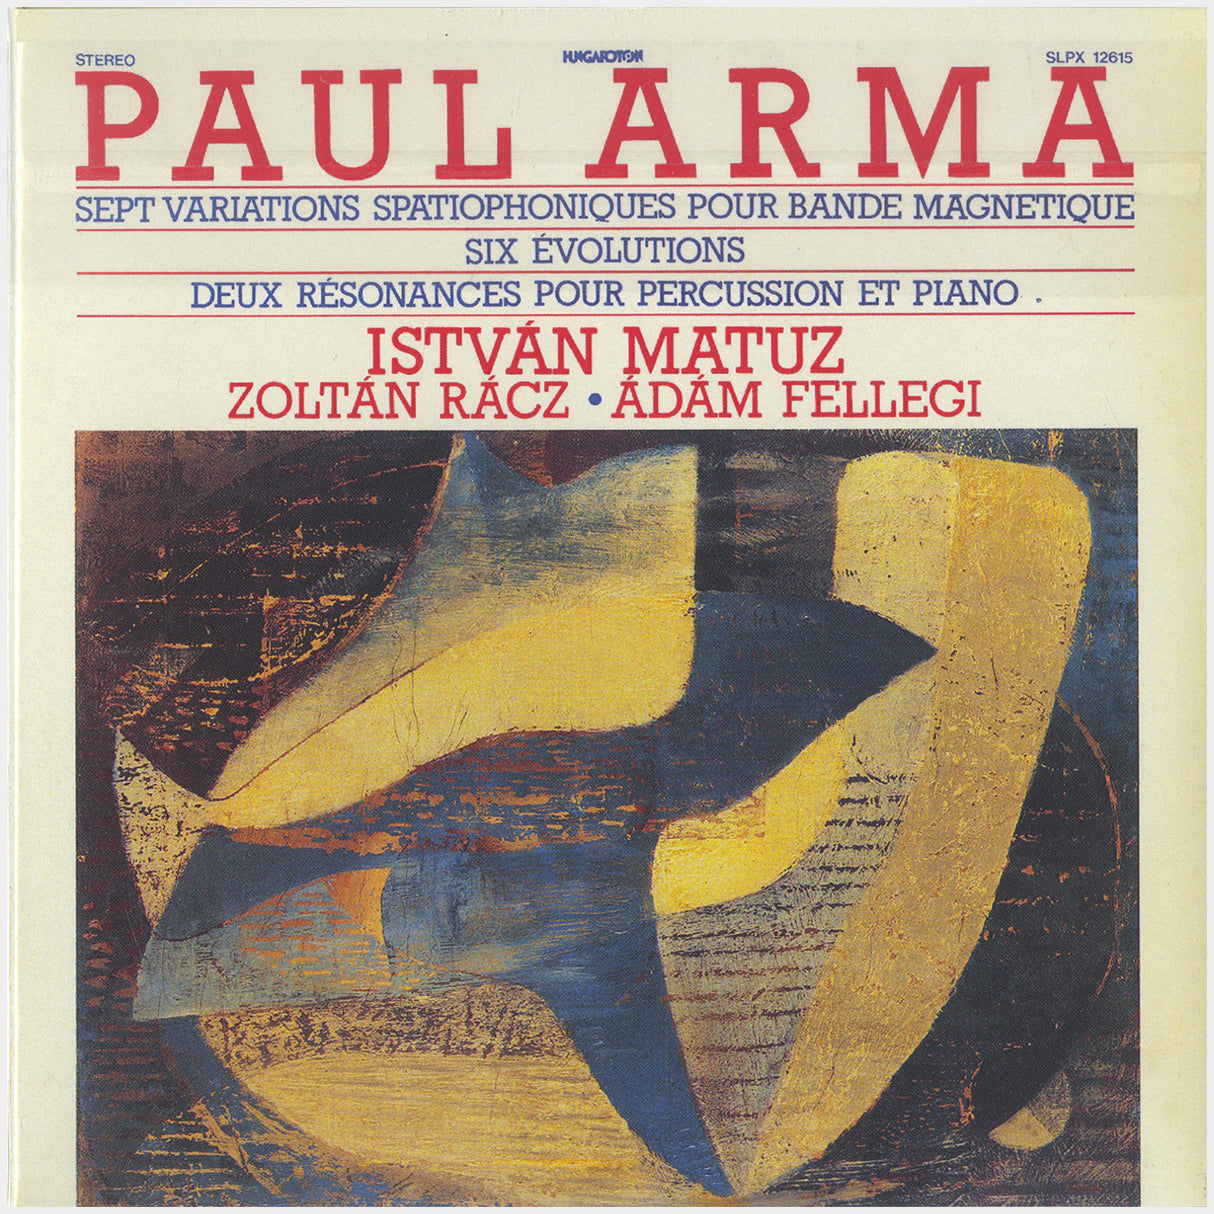 [CP 286 CD] Paul Arma; Quand La Mesure Est Pleine, Cantate Pour Bande Magnétique, Sept Variations Spatiophoniques